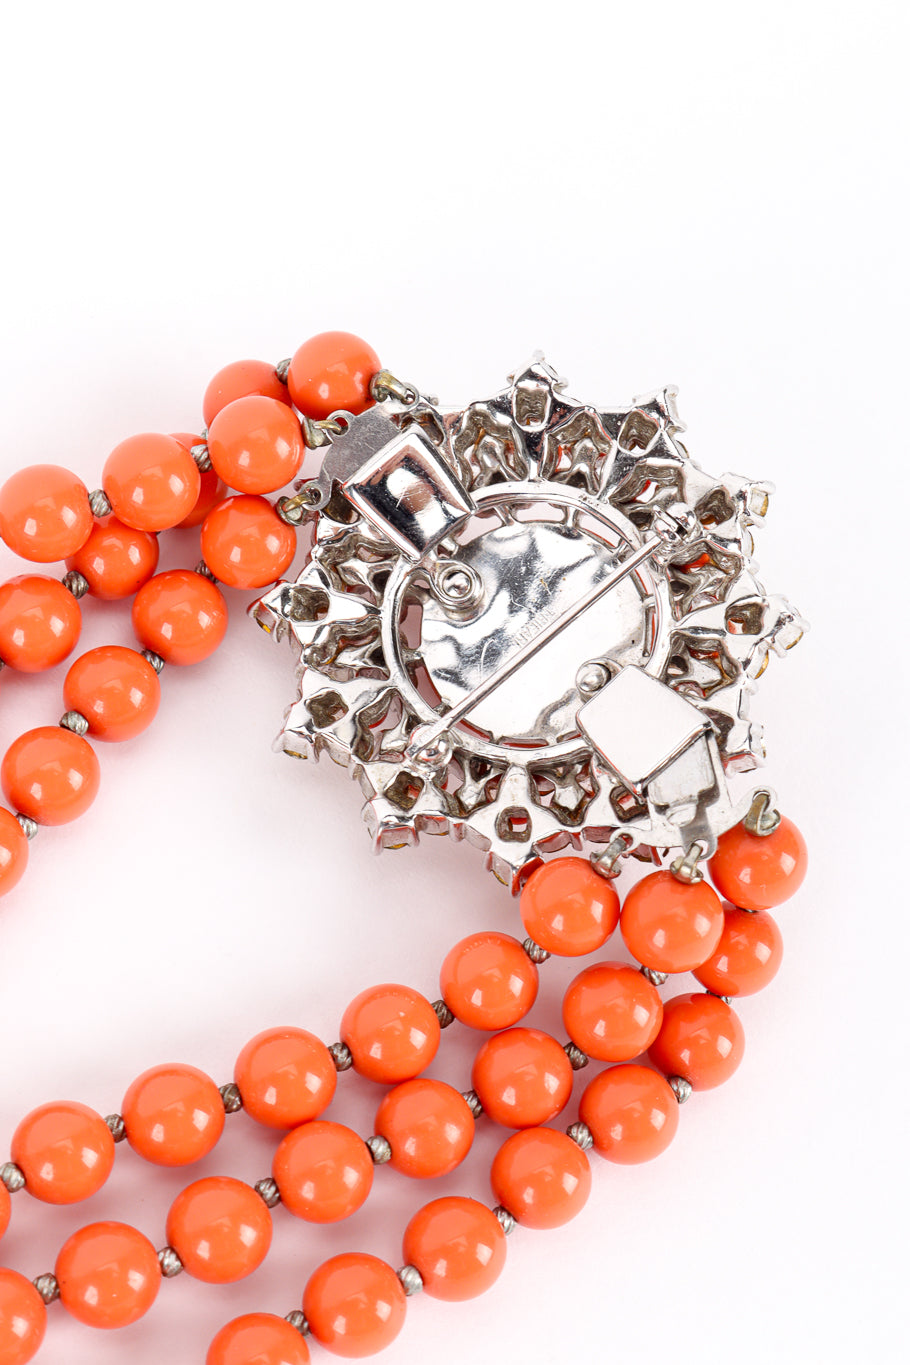 Vintage Trifari Coral Lucite Necklace & Earring Set back of necklace pendant @recess la